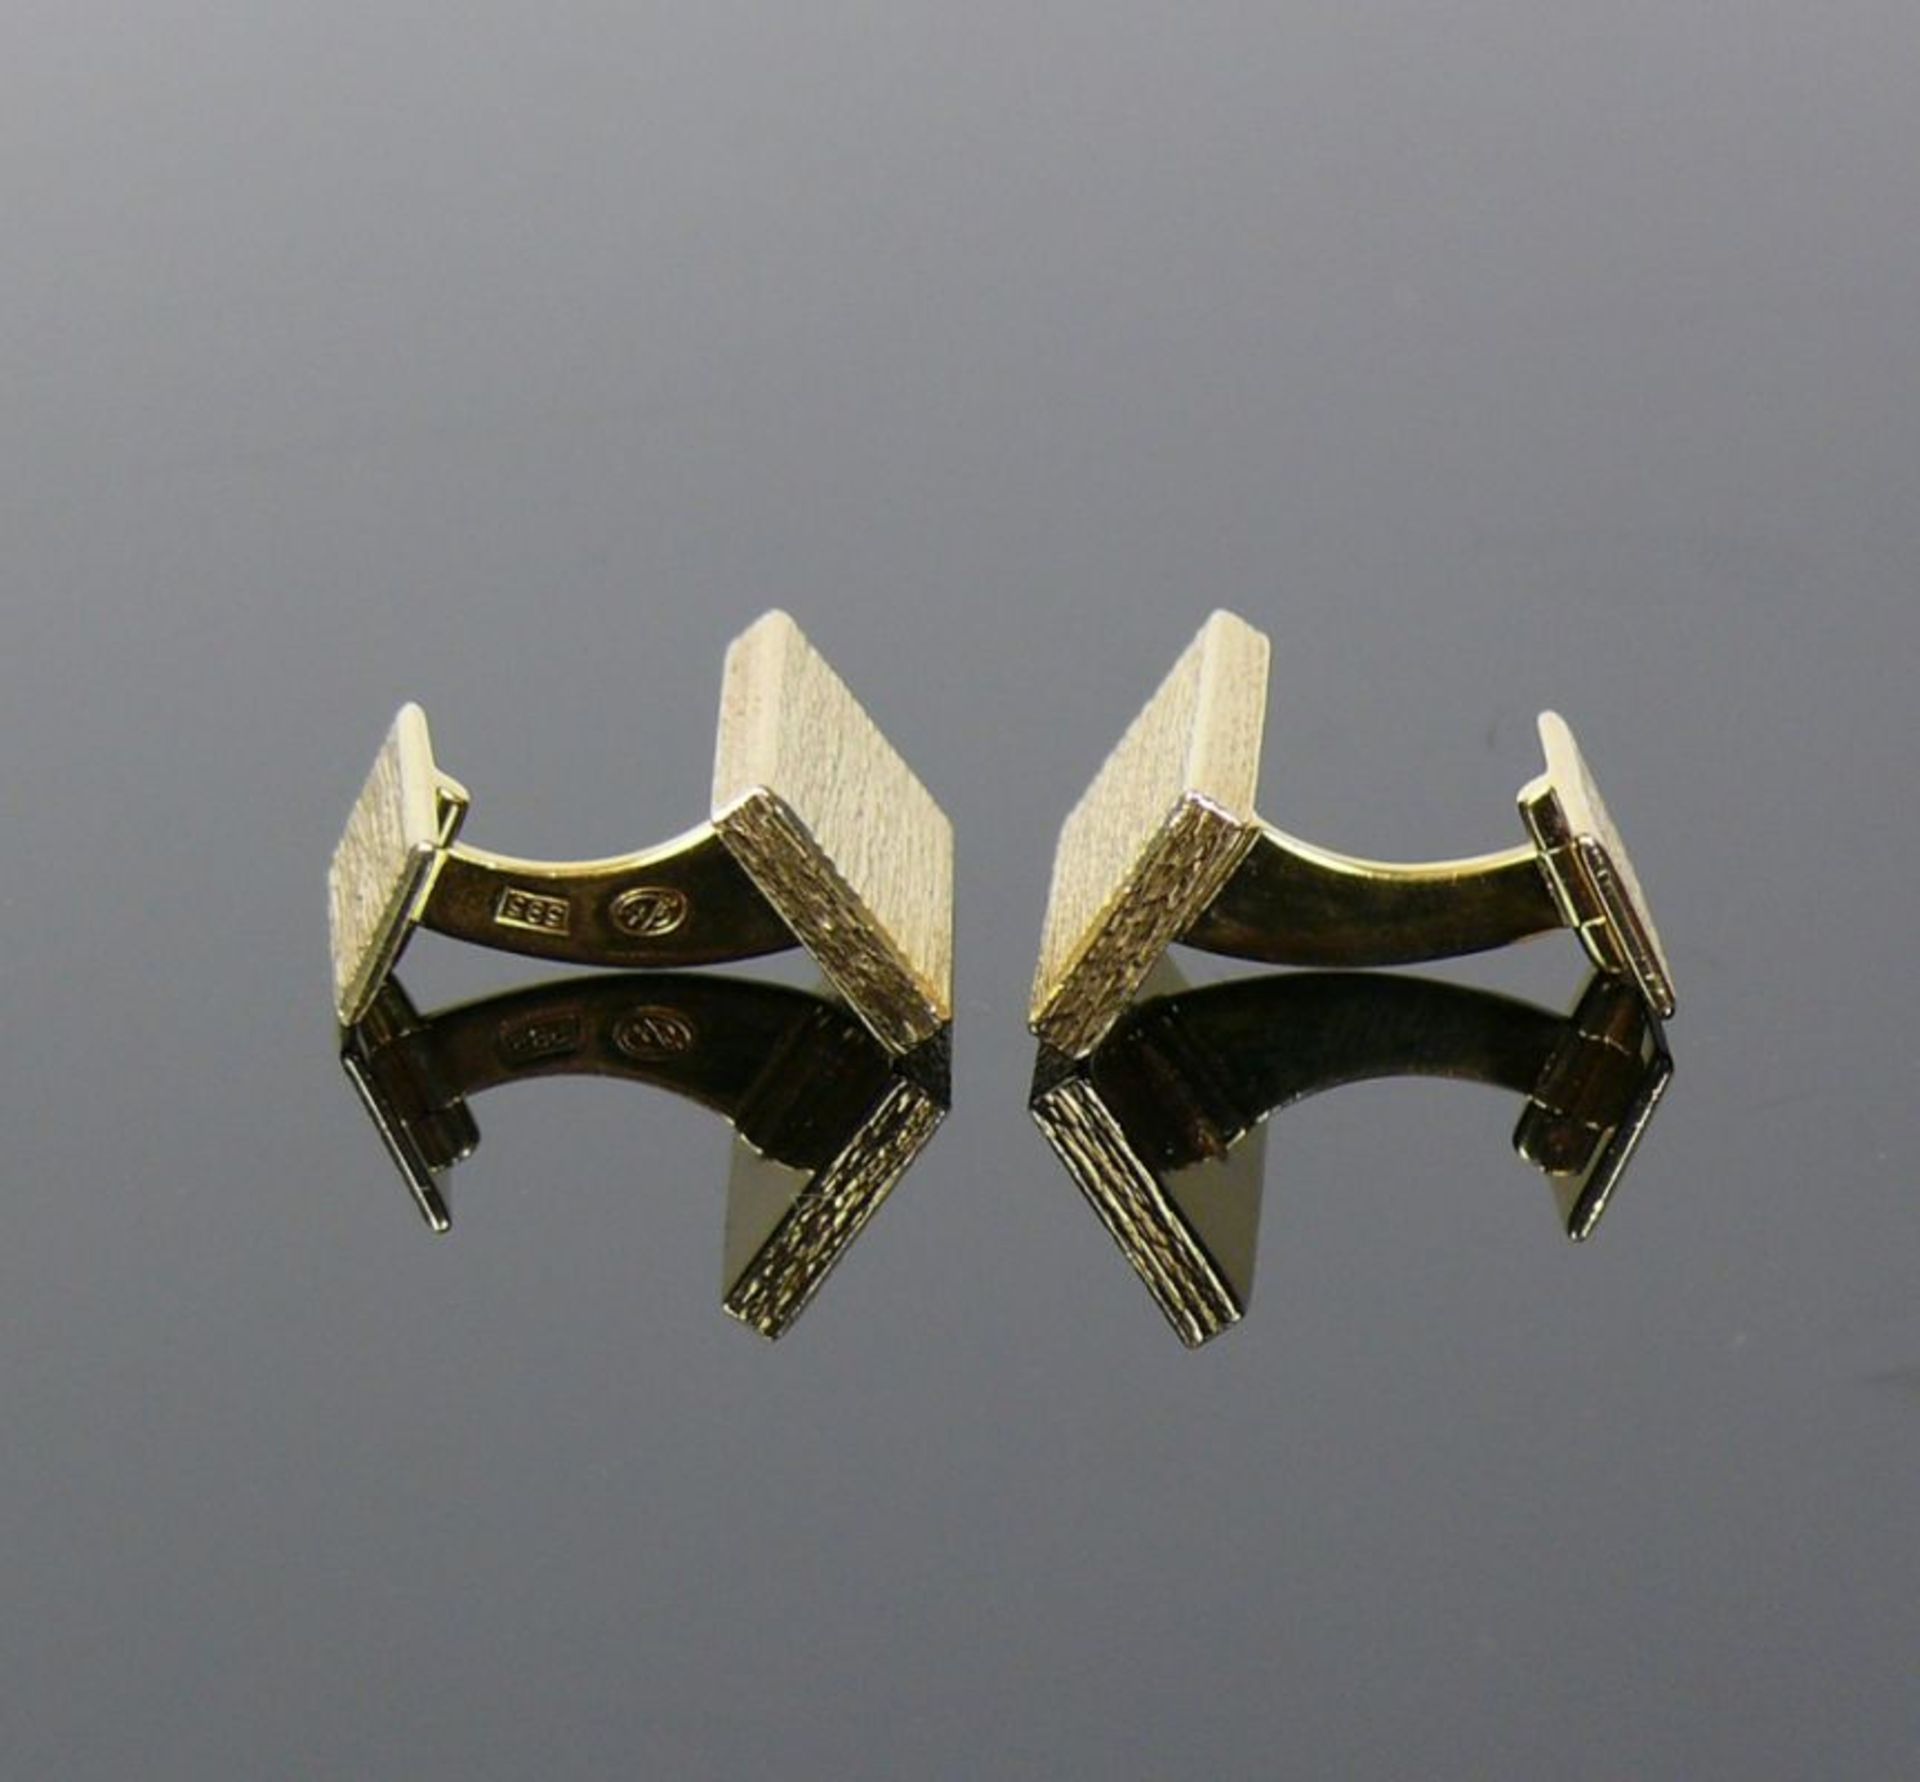 Paar Manschettenknöpfe14ct GG; rechteckige, schlichte Form; 25,5g; Goldschmiedearbeit - Bild 3 aus 4